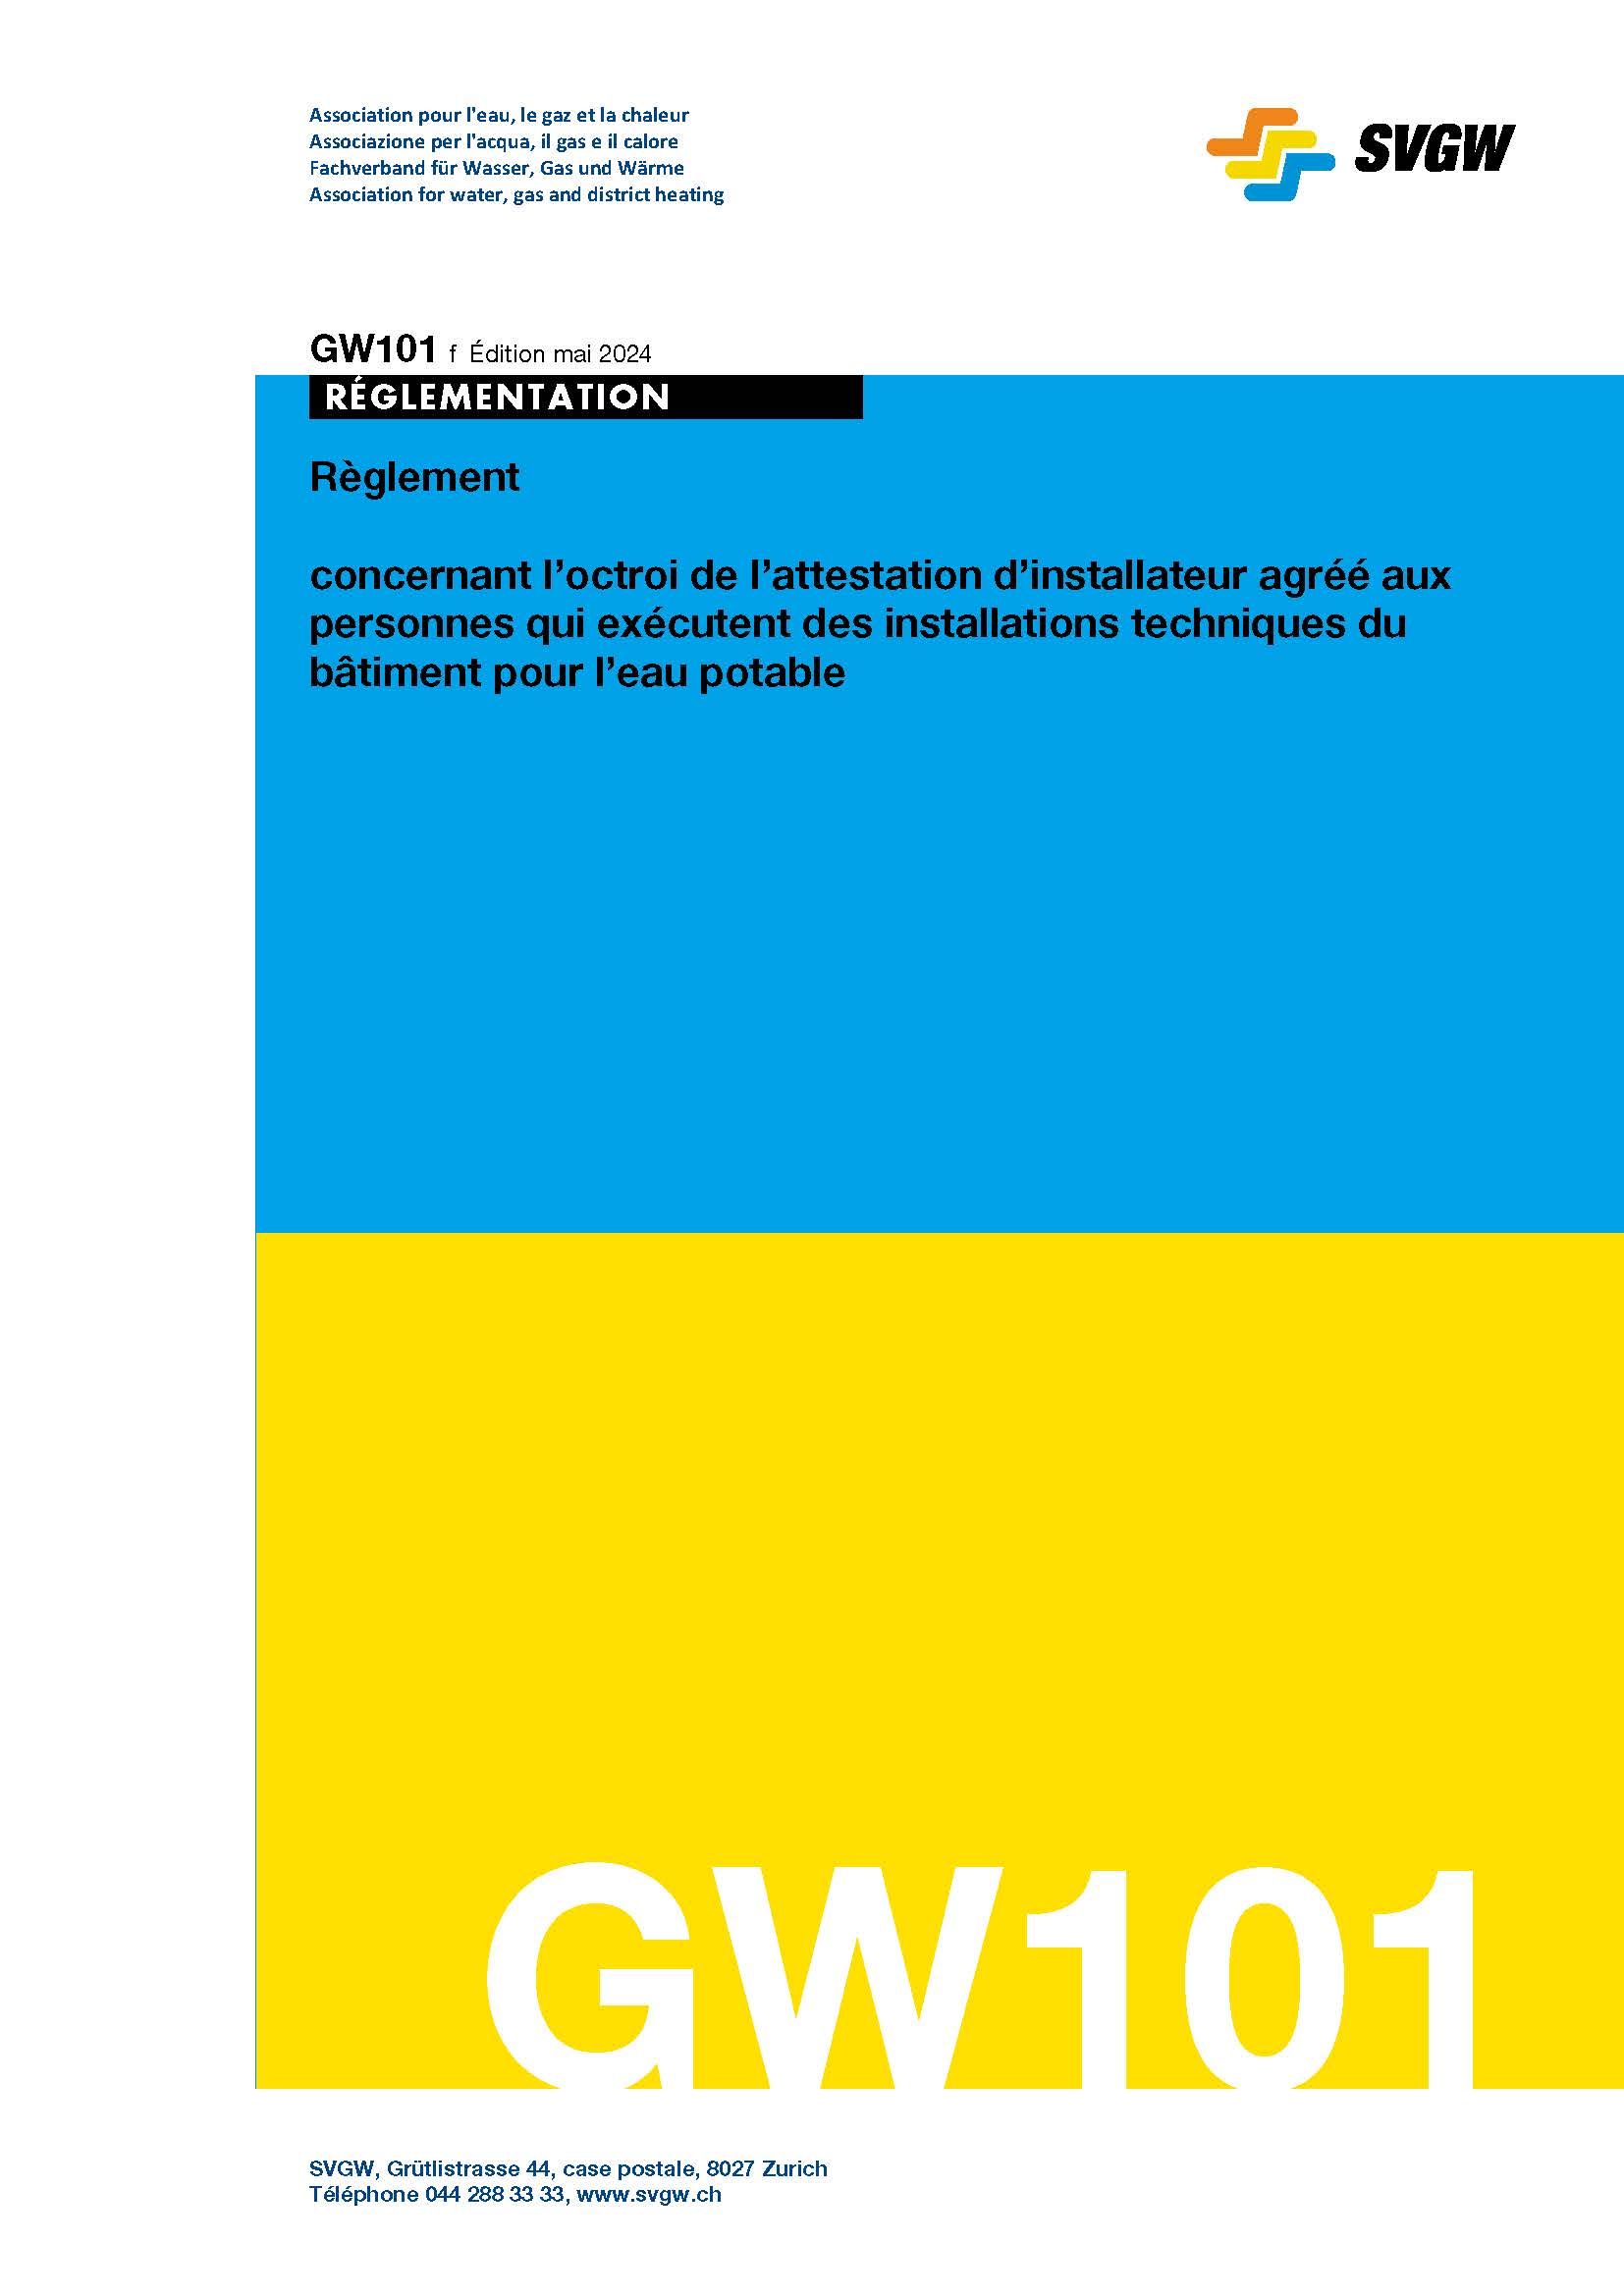 GW101 f Règlement concernant l'octroi de l'attestation d'installateur agréé eau aux personnes qui exécutent des installations techniques du bâtiment pour l'eau potable